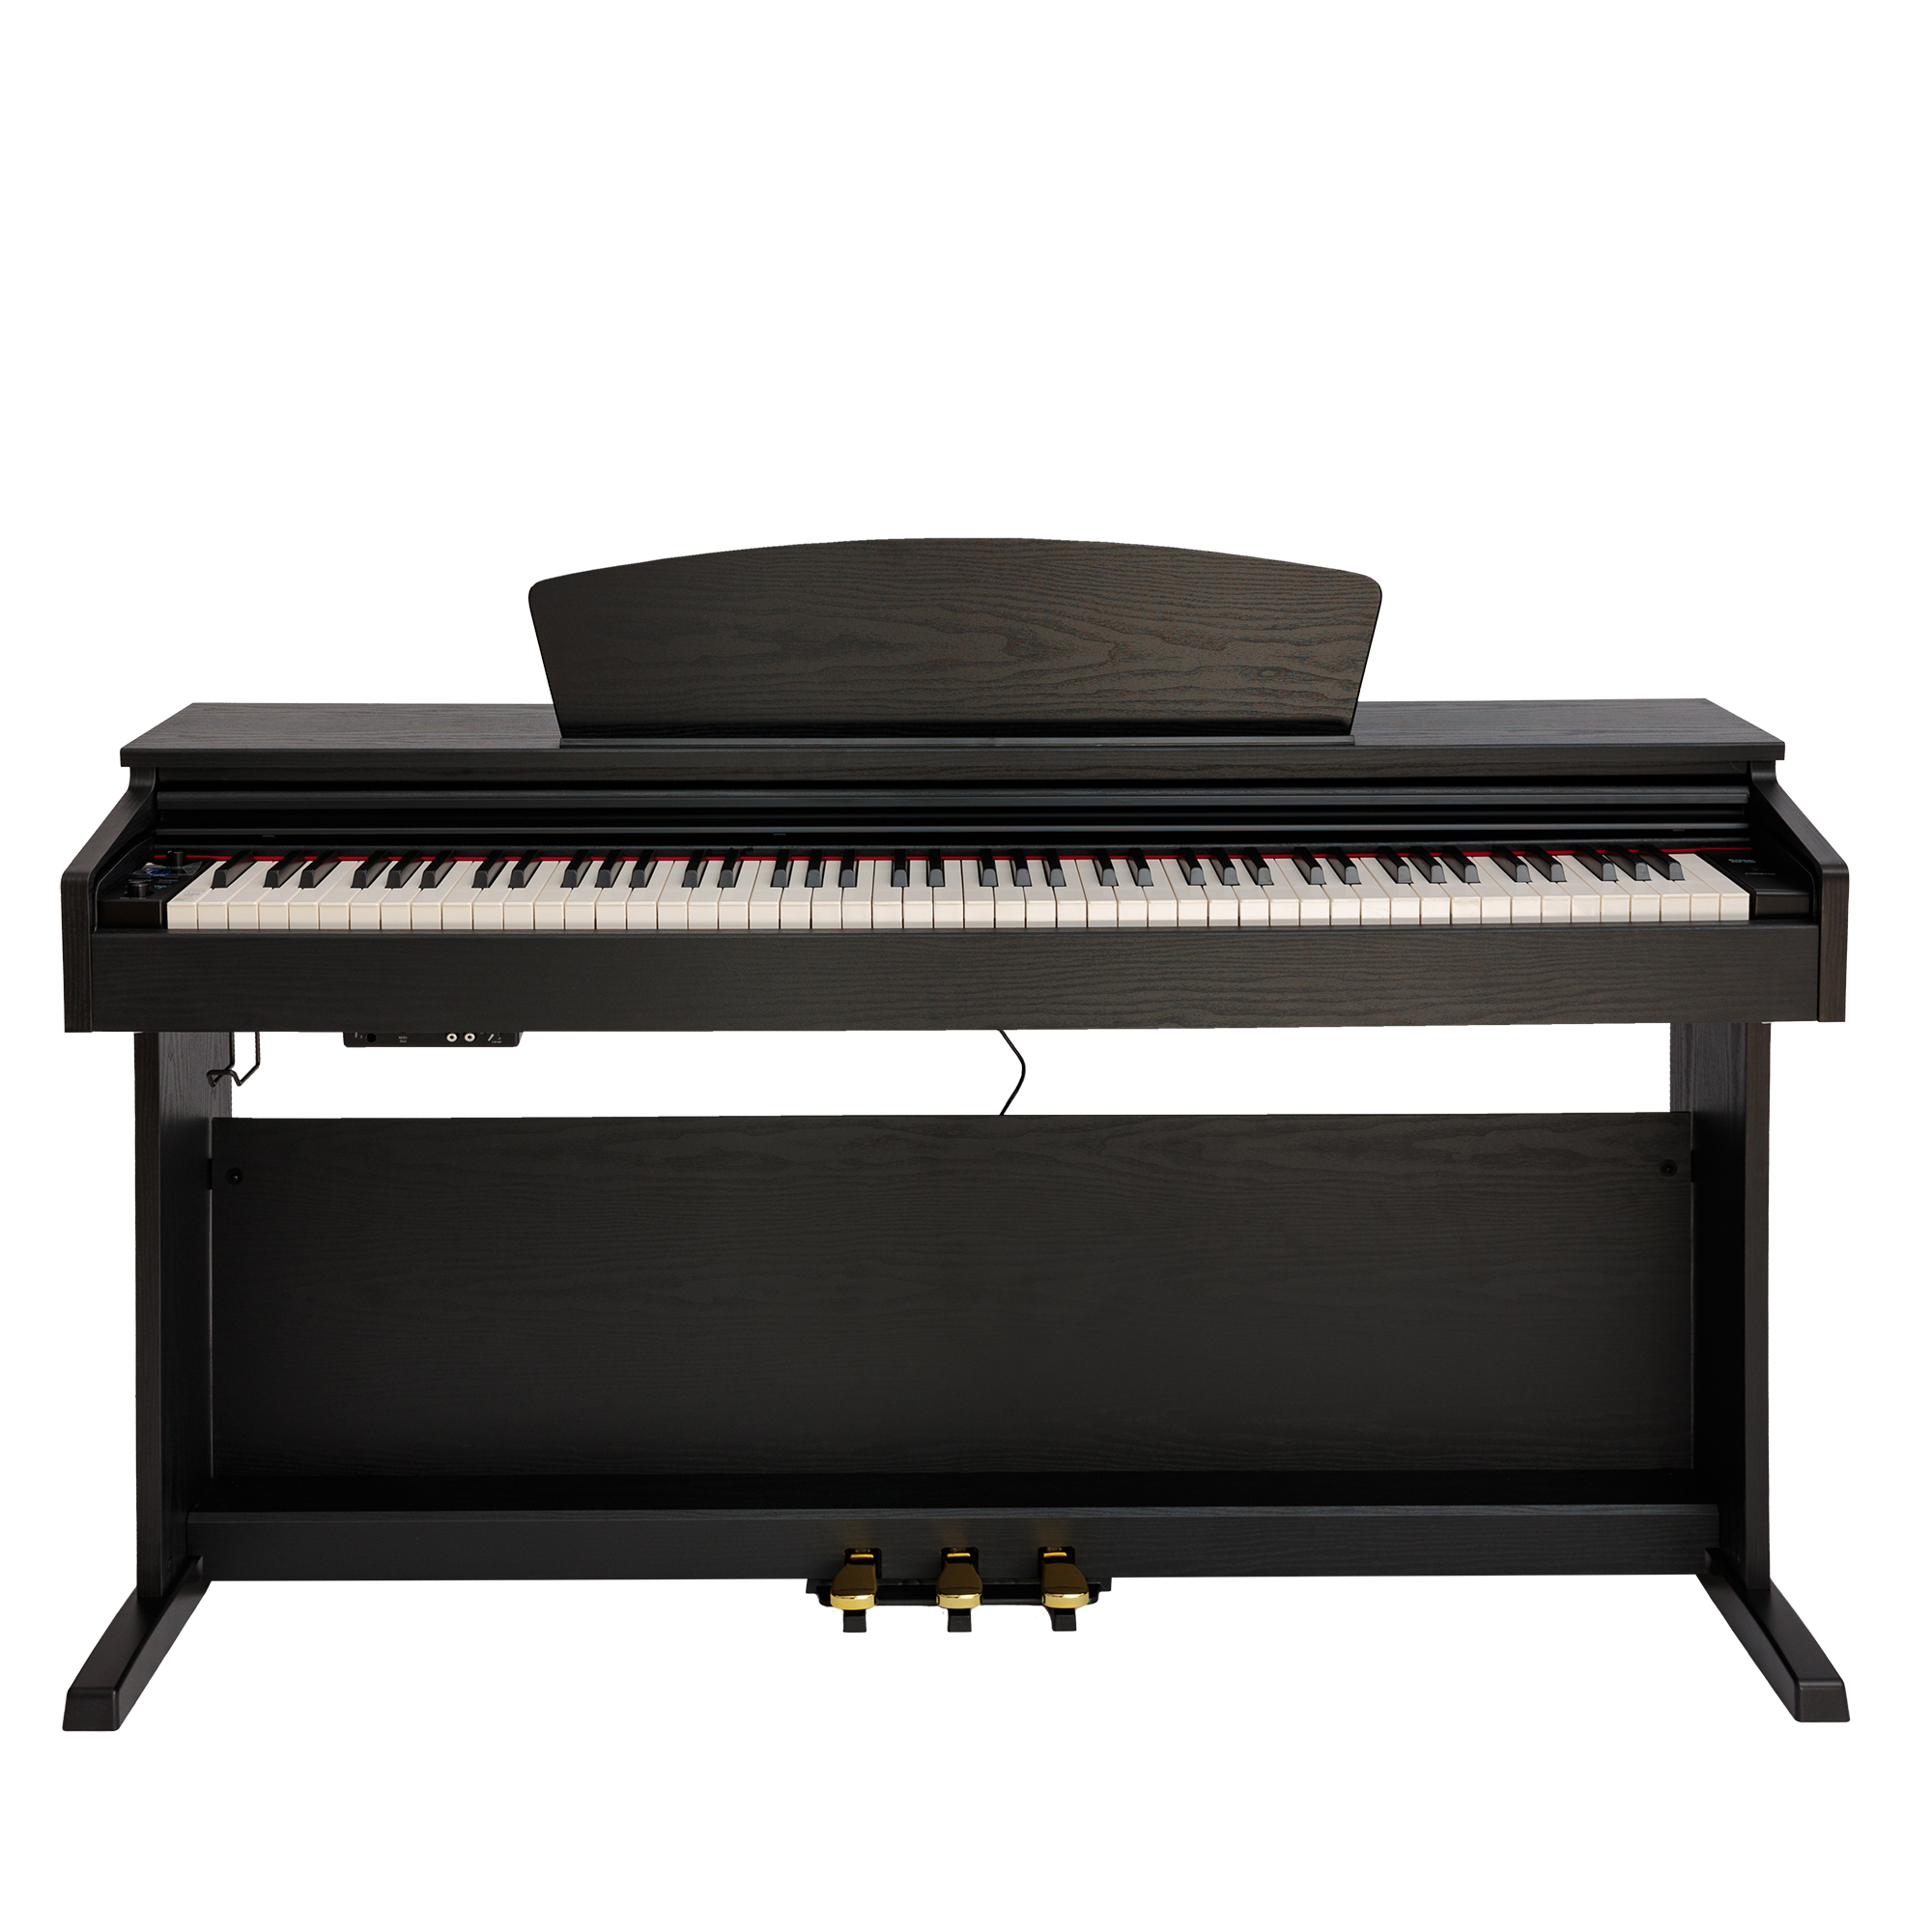 Цифровые пианино ROCKDALE Etude 128 Graded Black 37 клавиш детское музыкальное пианино электронное пианино клавиатура игрушка музыкальный инструмент игрушка